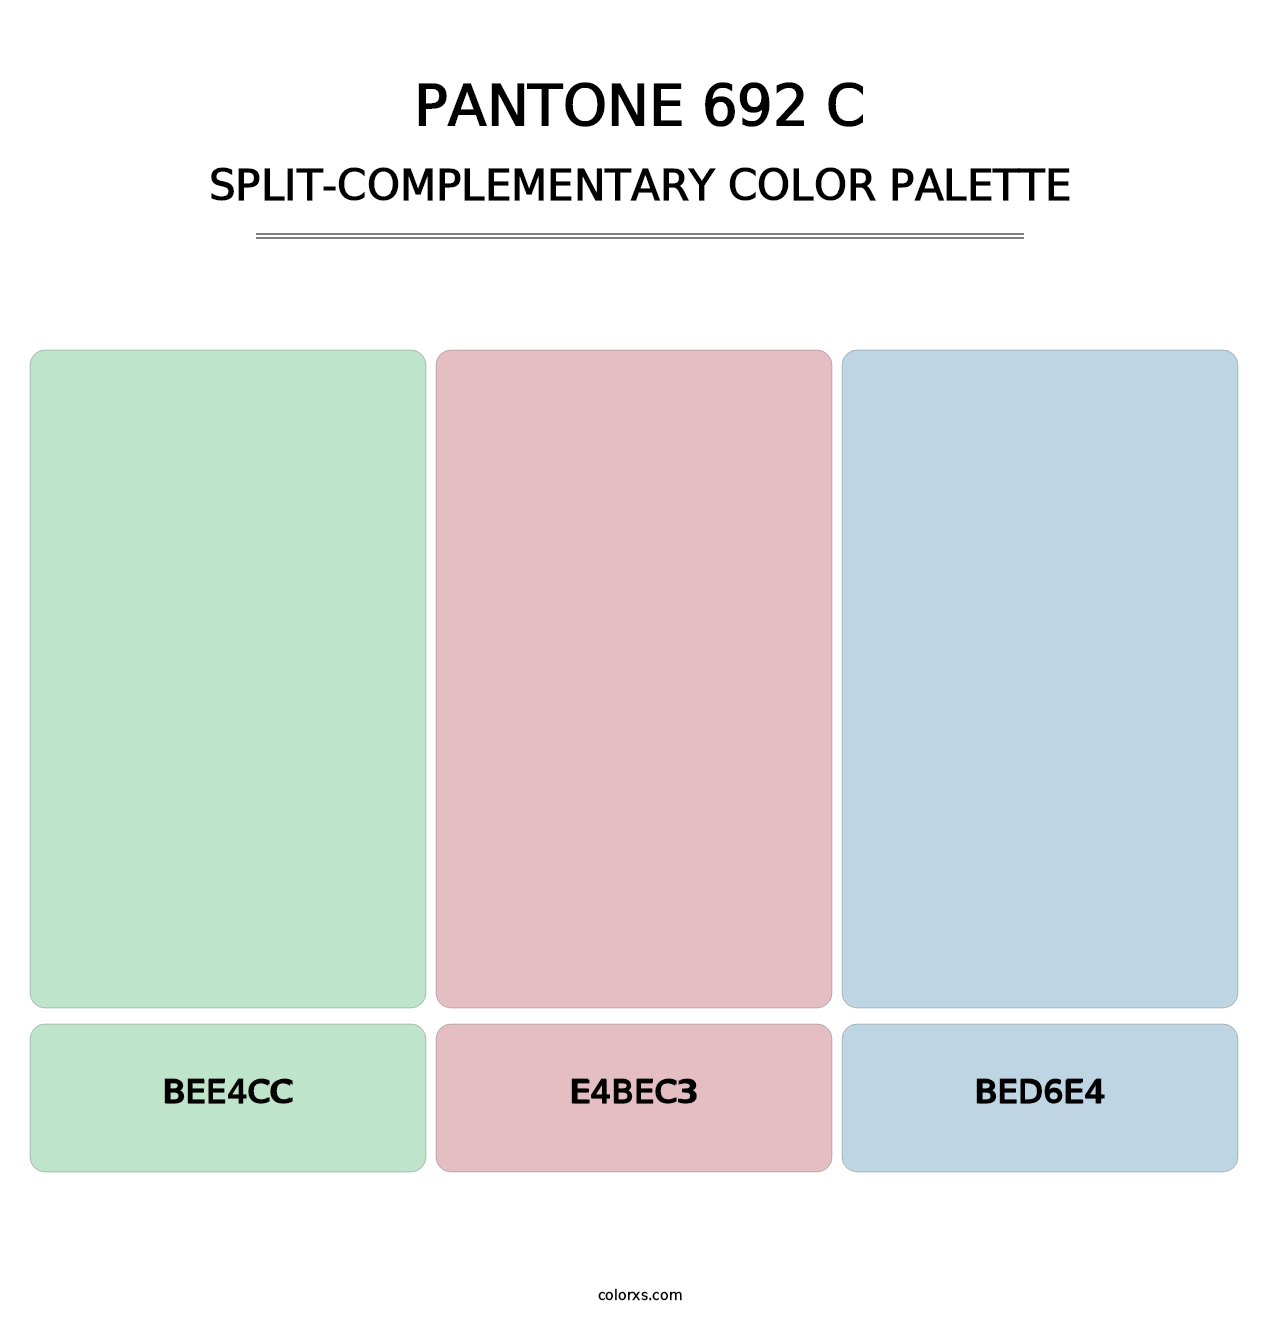 PANTONE 692 C - Split-Complementary Color Palette